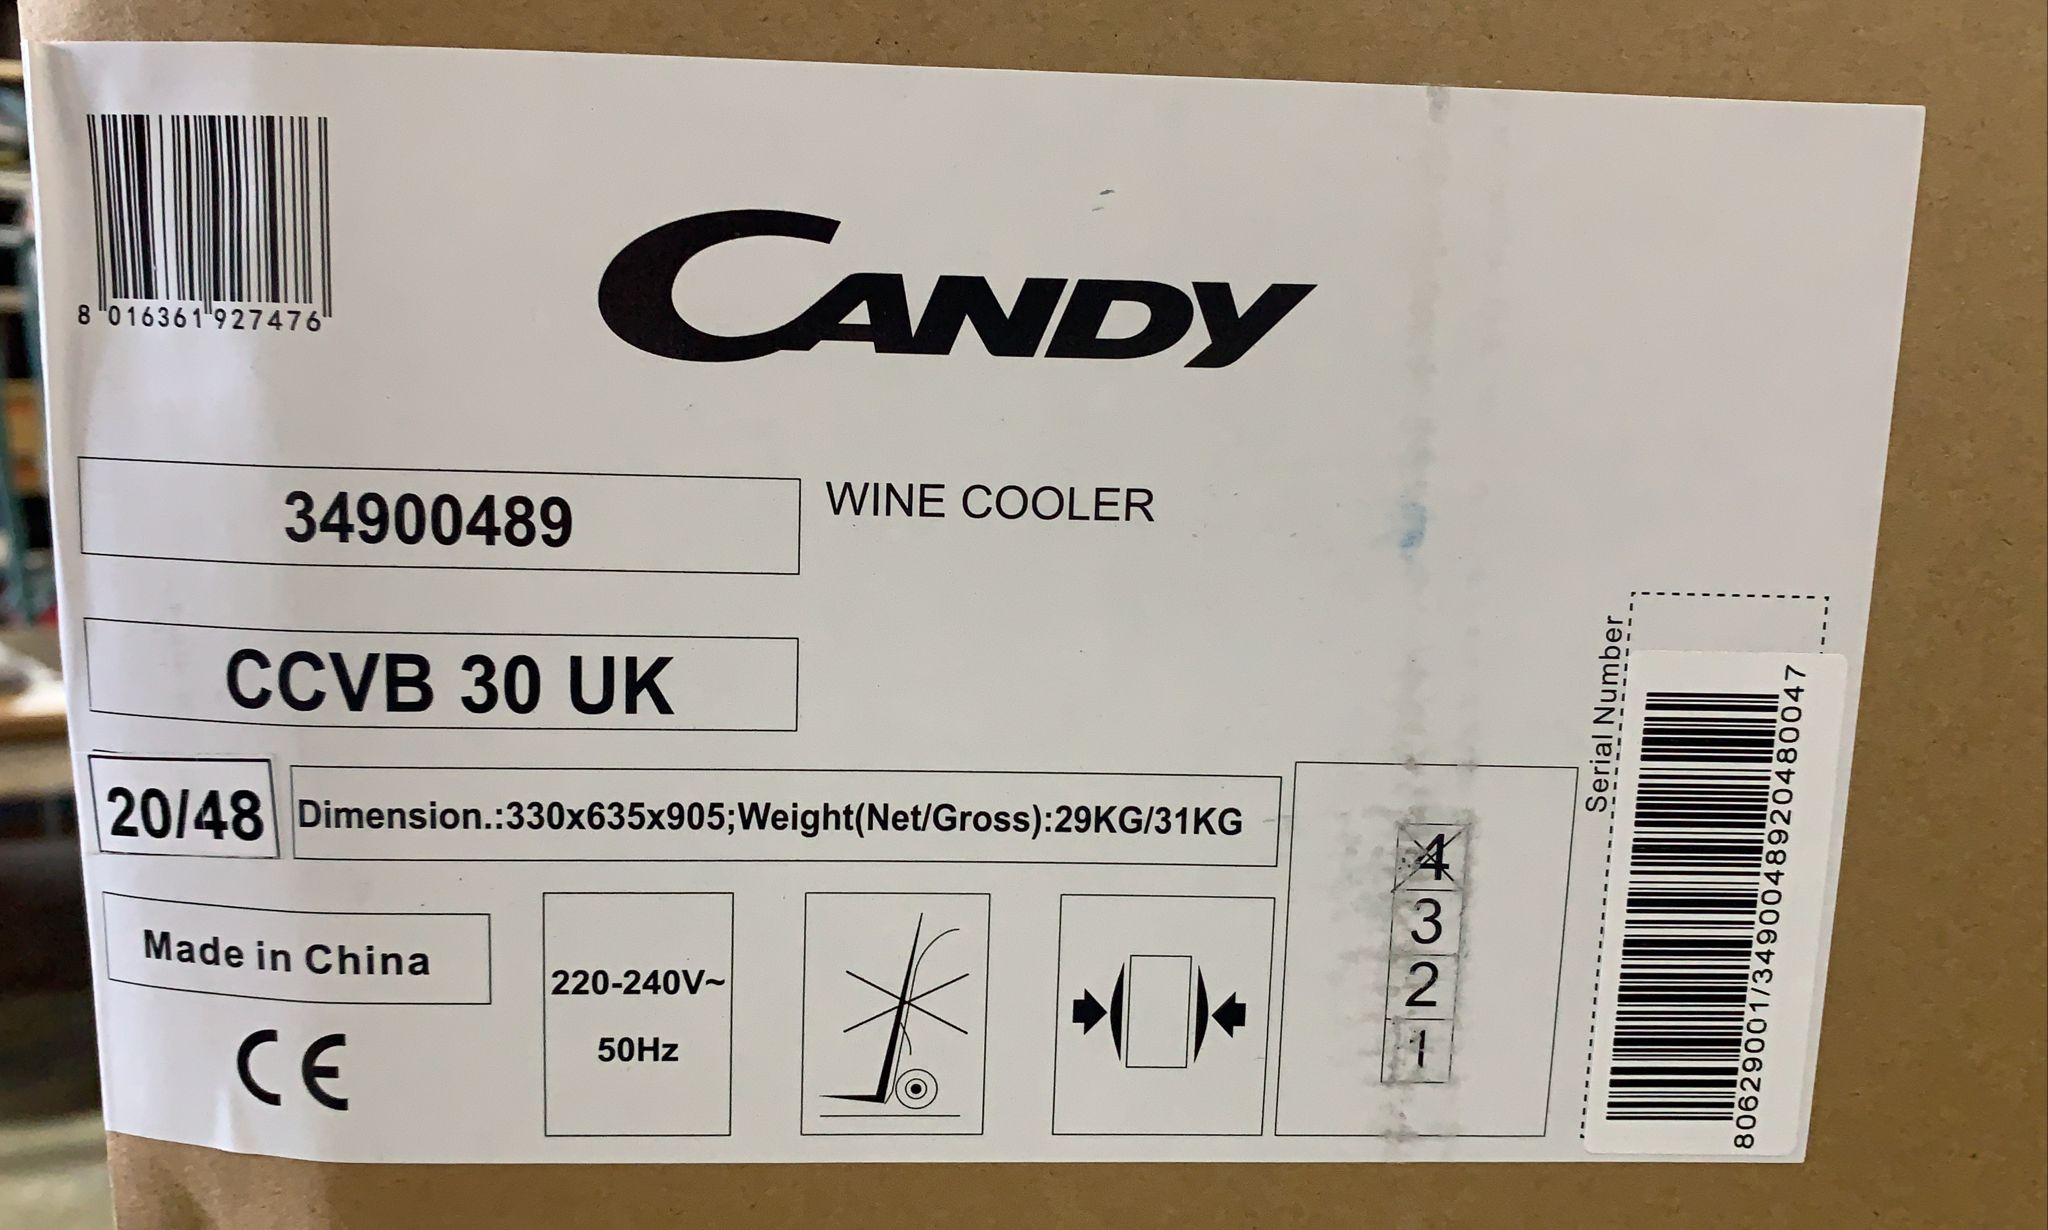 CANDY-Wine Cooler-Black-57L-CCVB 30 UK-7476